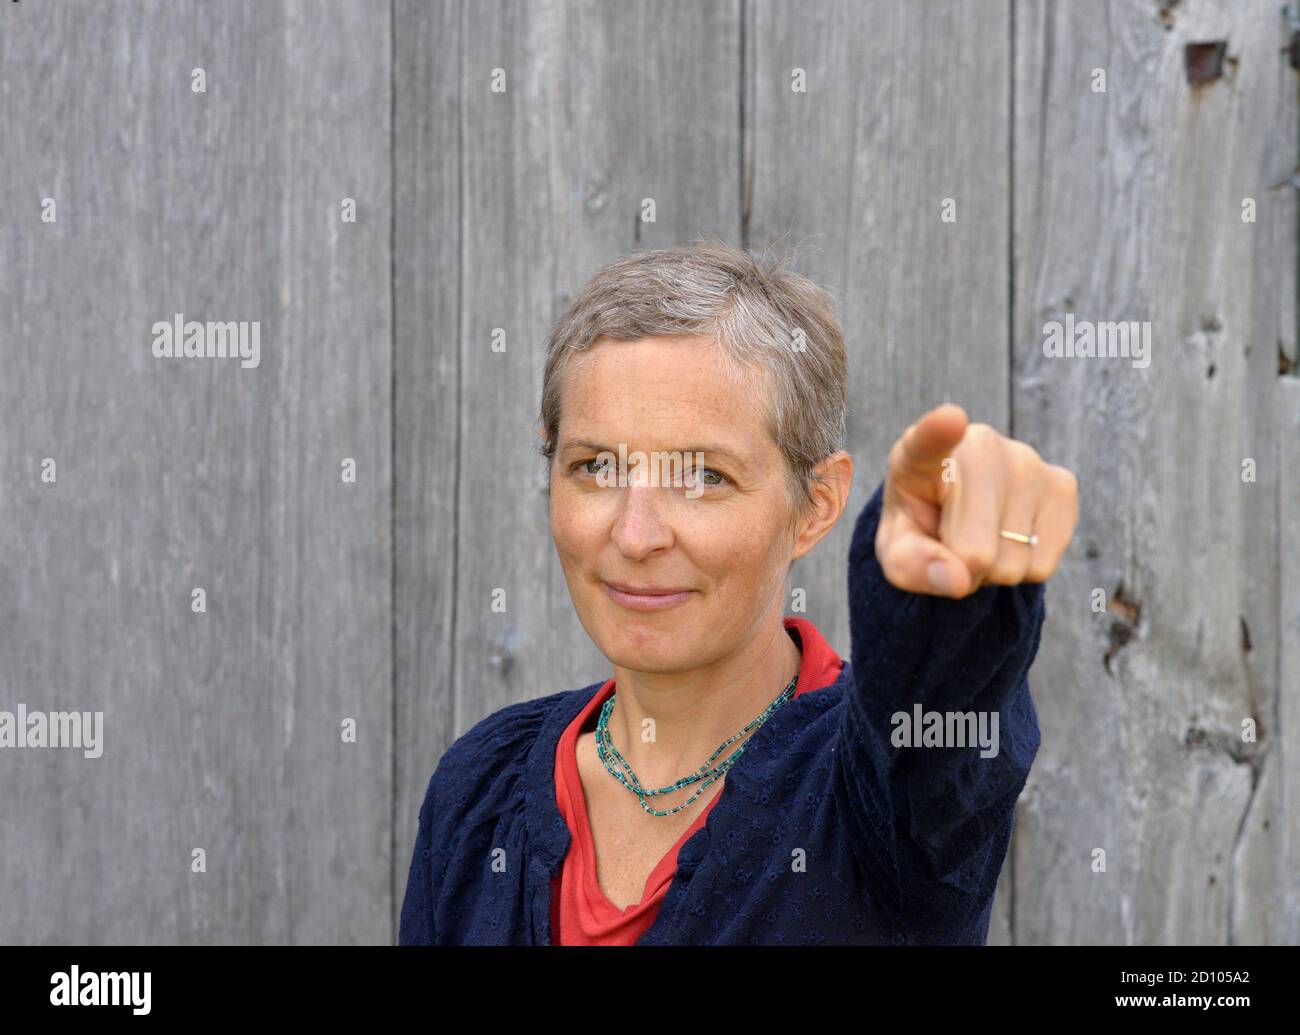 Determinada mujer de edad media caucásica país con puntos cortos de pelo en el espectador con el dedo índice de la mano izquierda, frente al antiguo granero de fondo de madera. Foto de stock